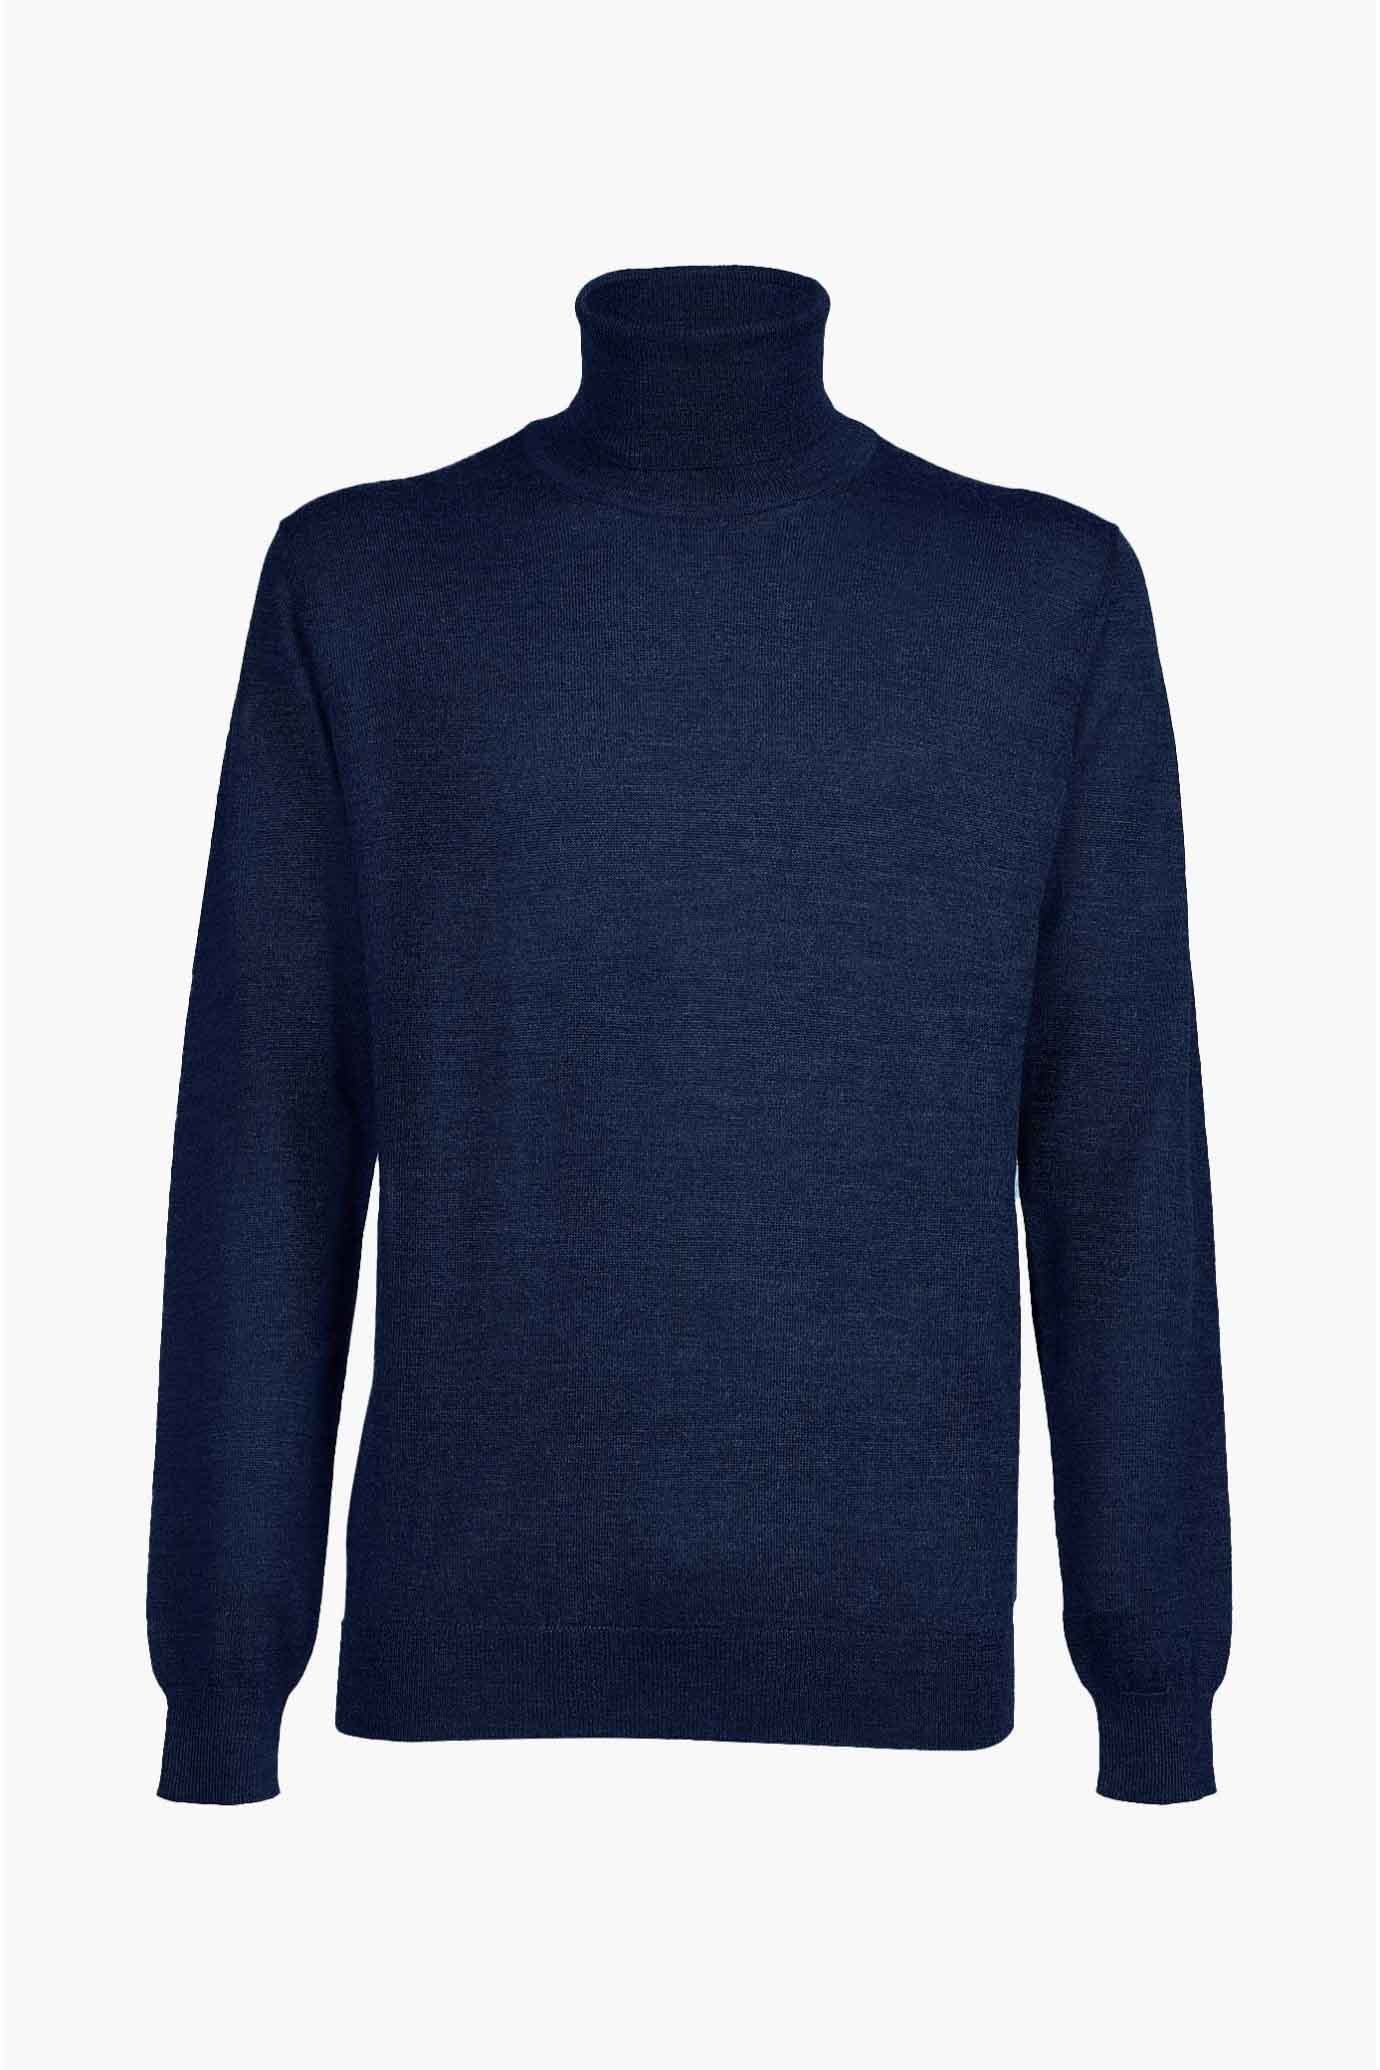 Suéter de la marca Sorbino Azul Marino